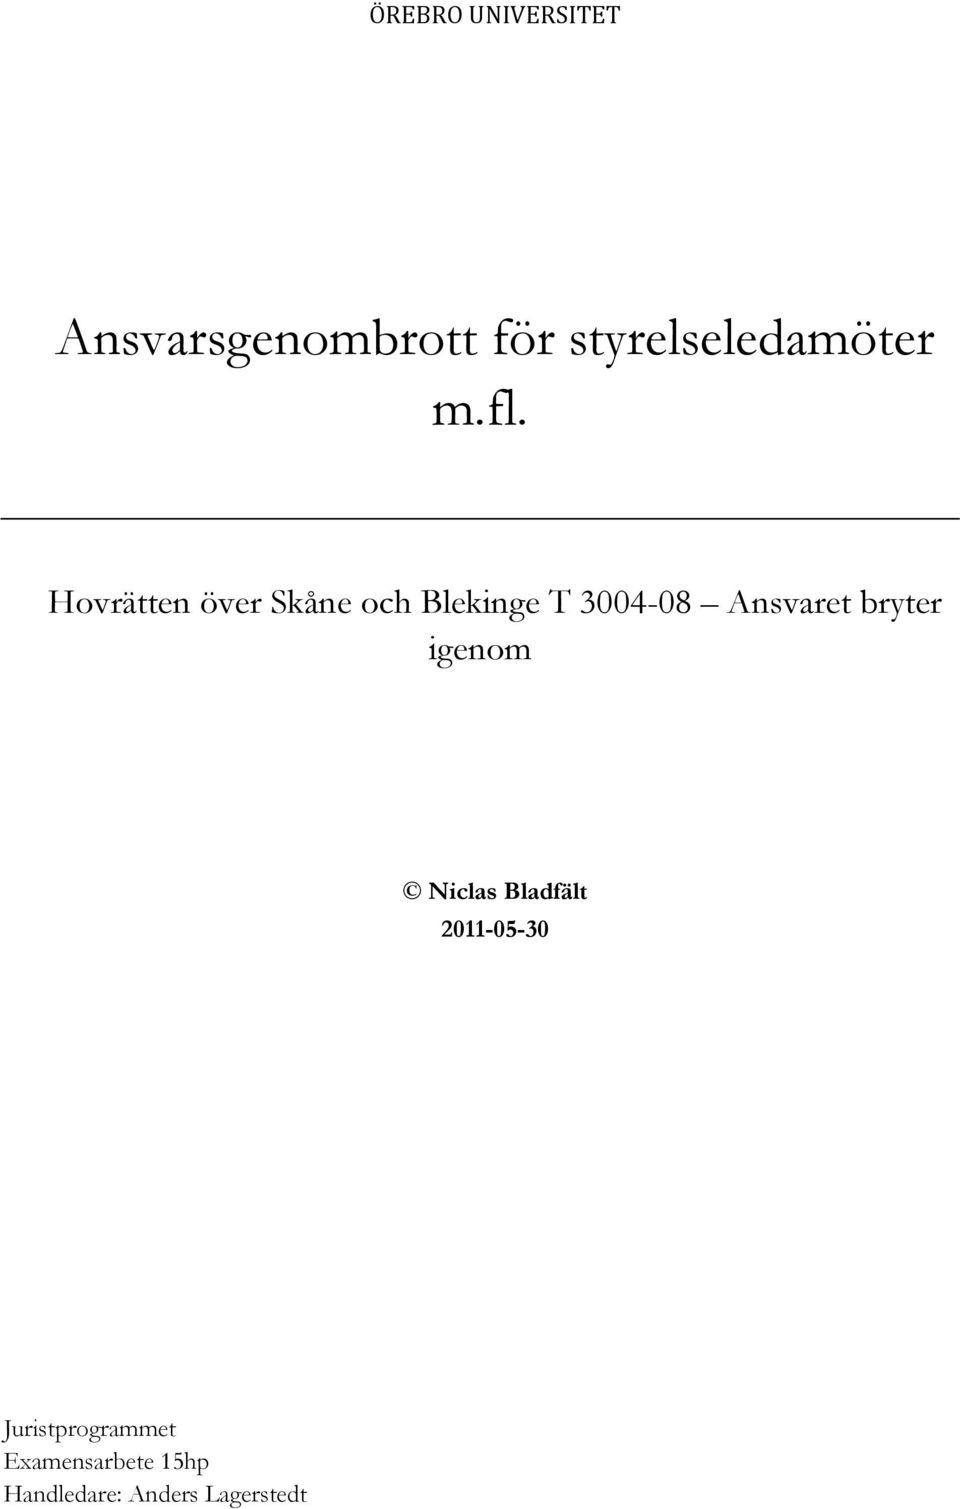 Hovrätten över Skåne och Blekinge T 3004-08 Ansvaret